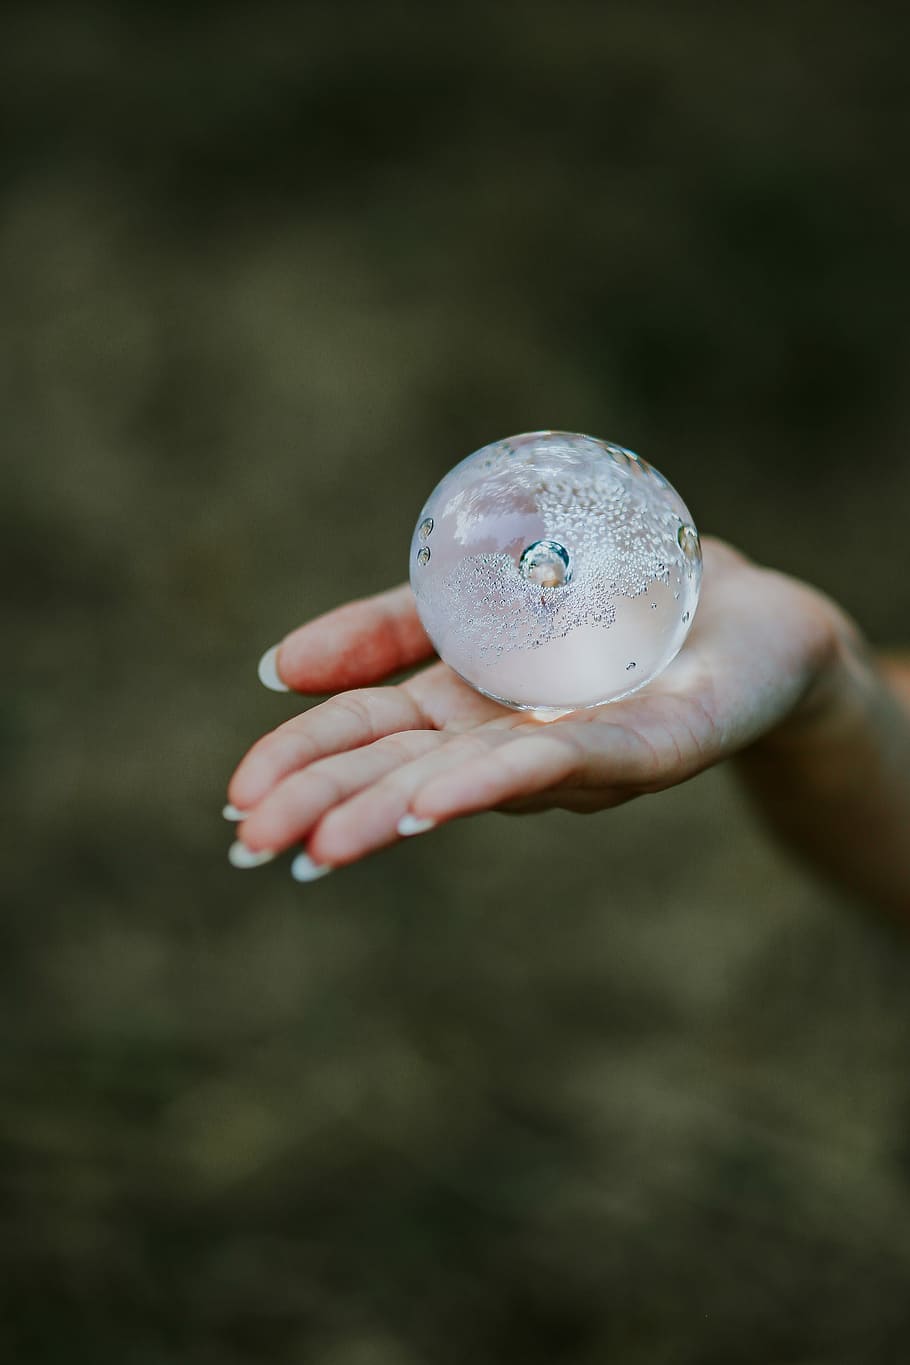 pequeño, bola de cristal, mujer, pequeño cristal, hembra, manos, edificio de cristal, femina, naturaleza, mano humana